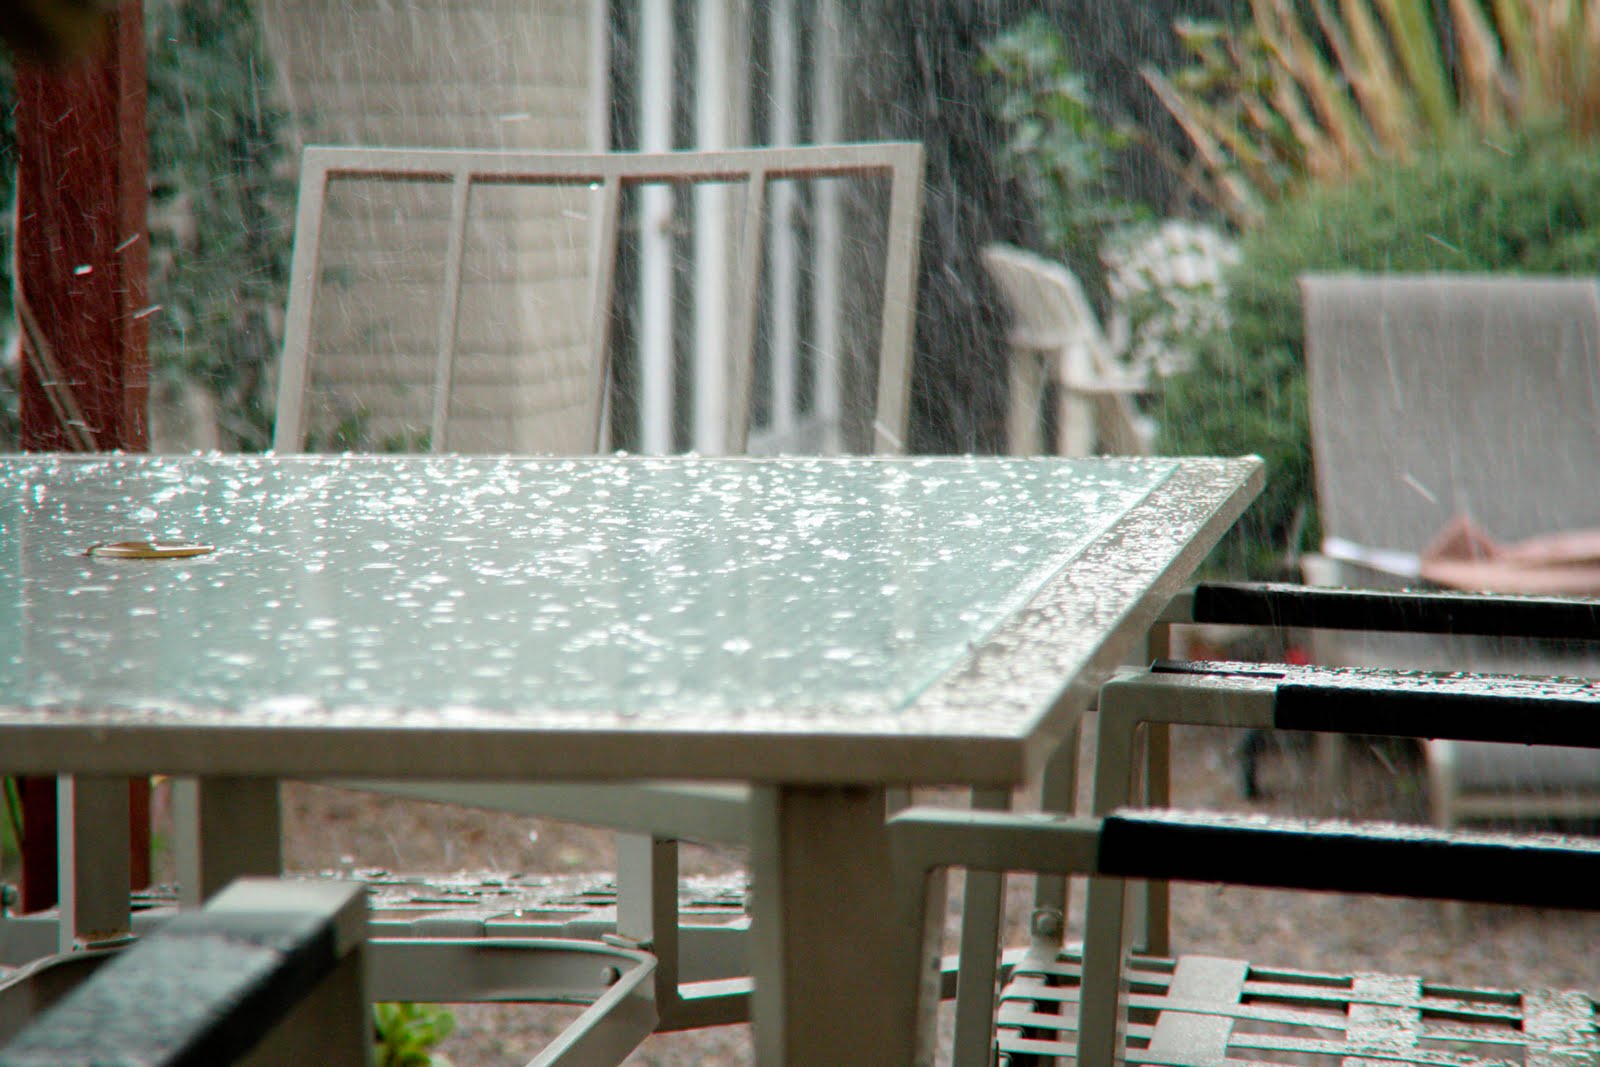 [table+rain+(1+of+1).jpg]